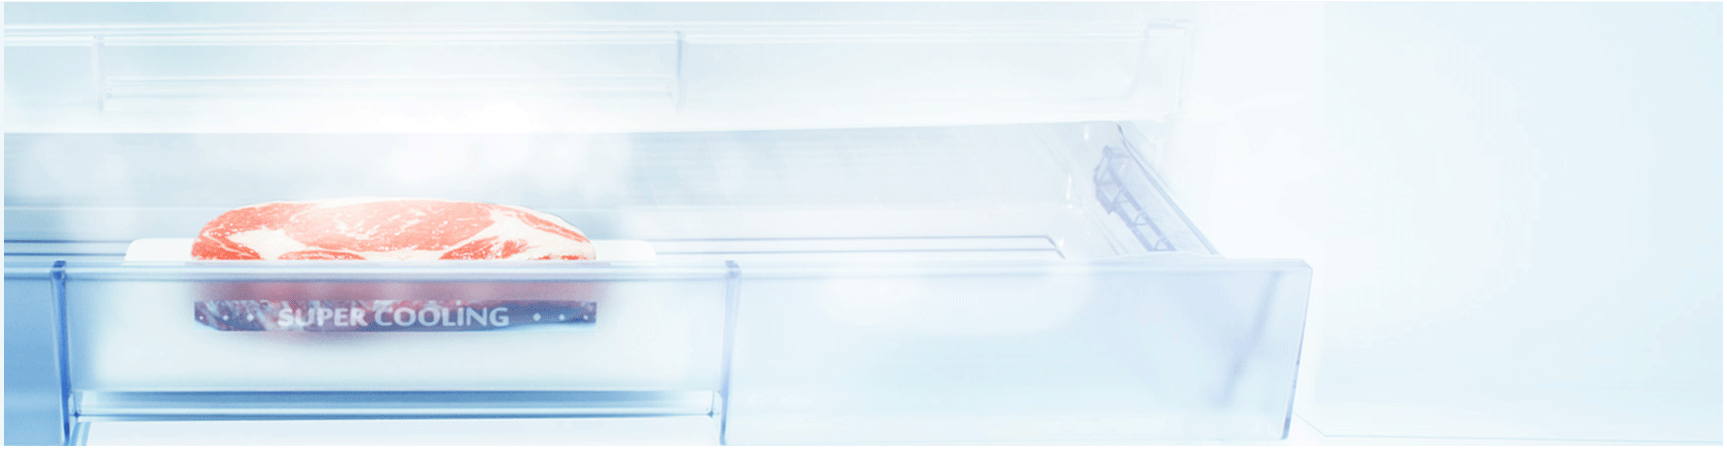 [Hỗ Trợ Kỹ Thuật] Tập 1 - Mitsubishi Electric hướng dẫn vệ sinh dàn lạnh cục bộ công suất lớn Package (PAC)